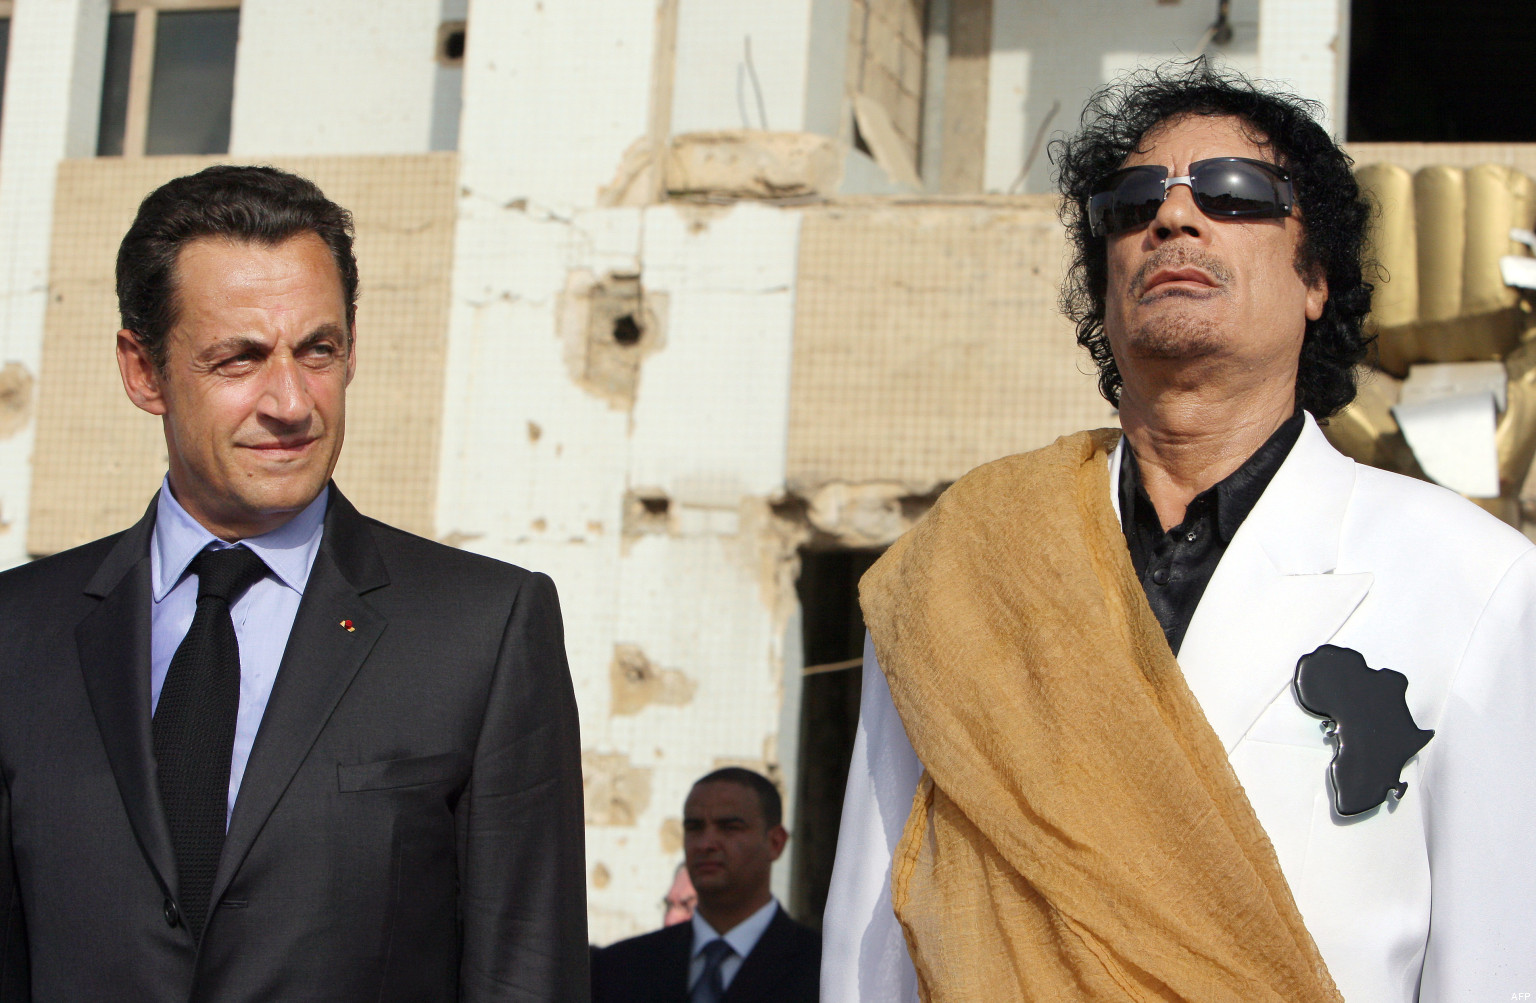 Financement libyen à Sarkozy : les éléments à charge augmentent